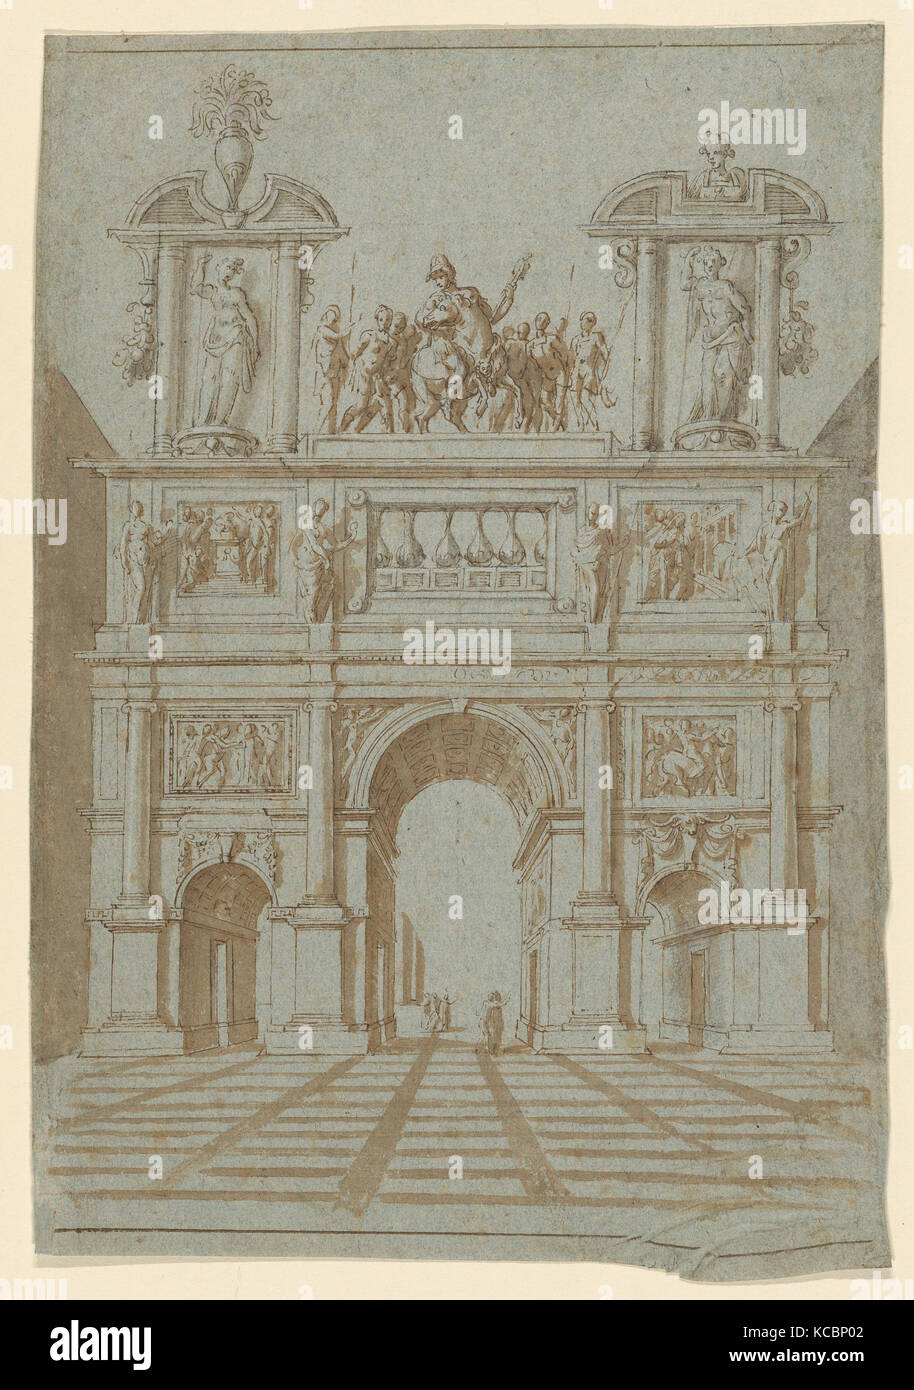 Conception d'un arc de triomphe dans le rendu de perspective, anonyme, britannique, 17e siècle, cercle d'Inigo Jones, ca. 1600-1630 Banque D'Images